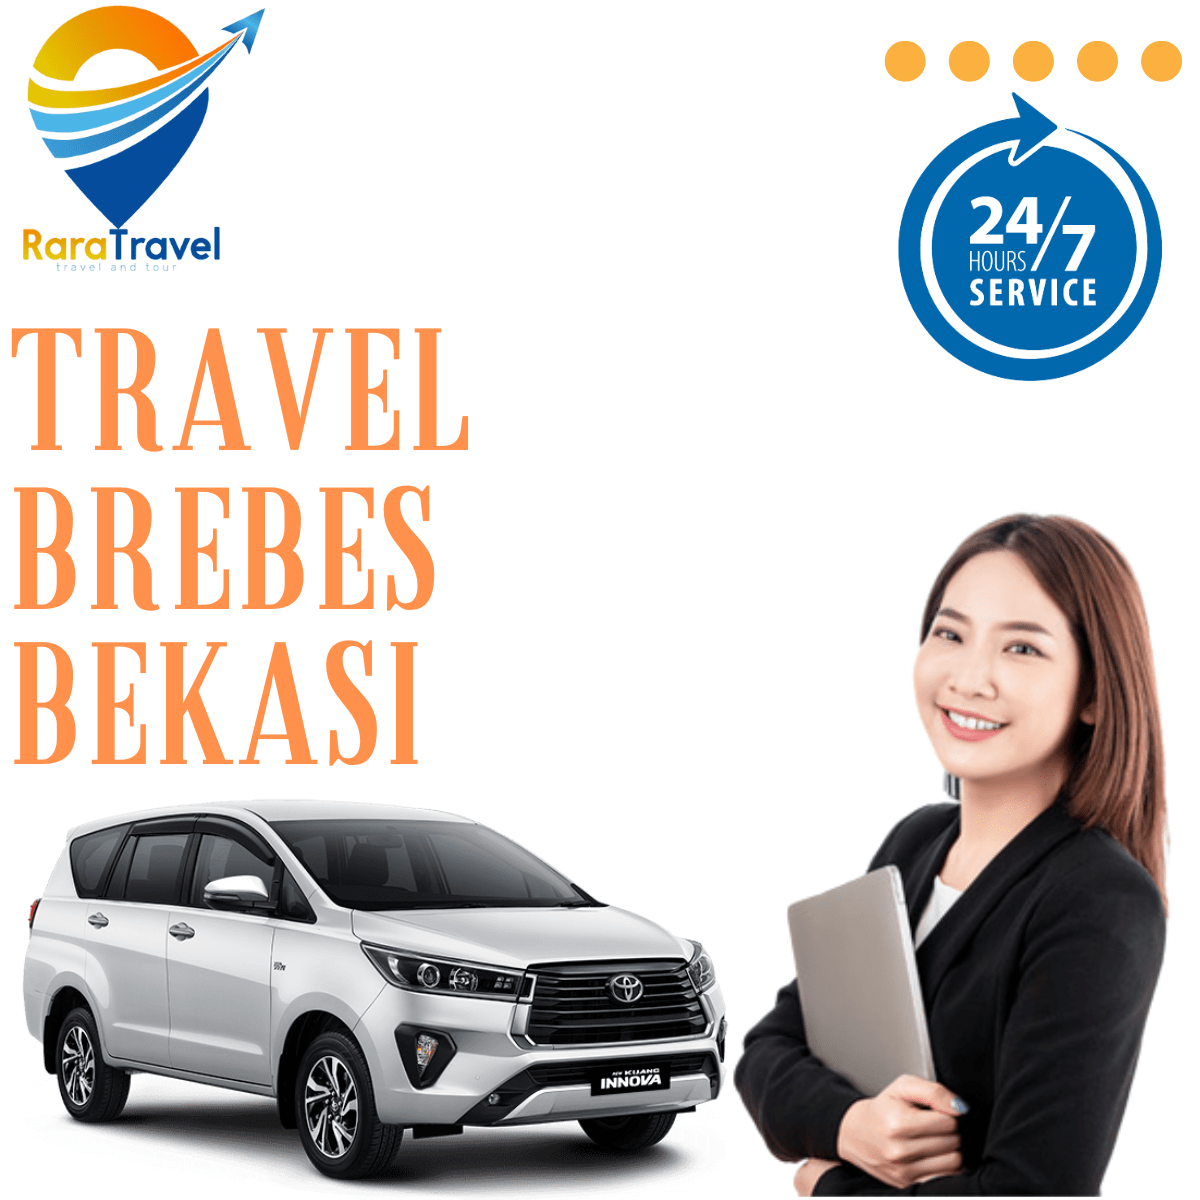 Travel Brebes Bekasi Murah Hiace via Toll - RaraTravel.ID